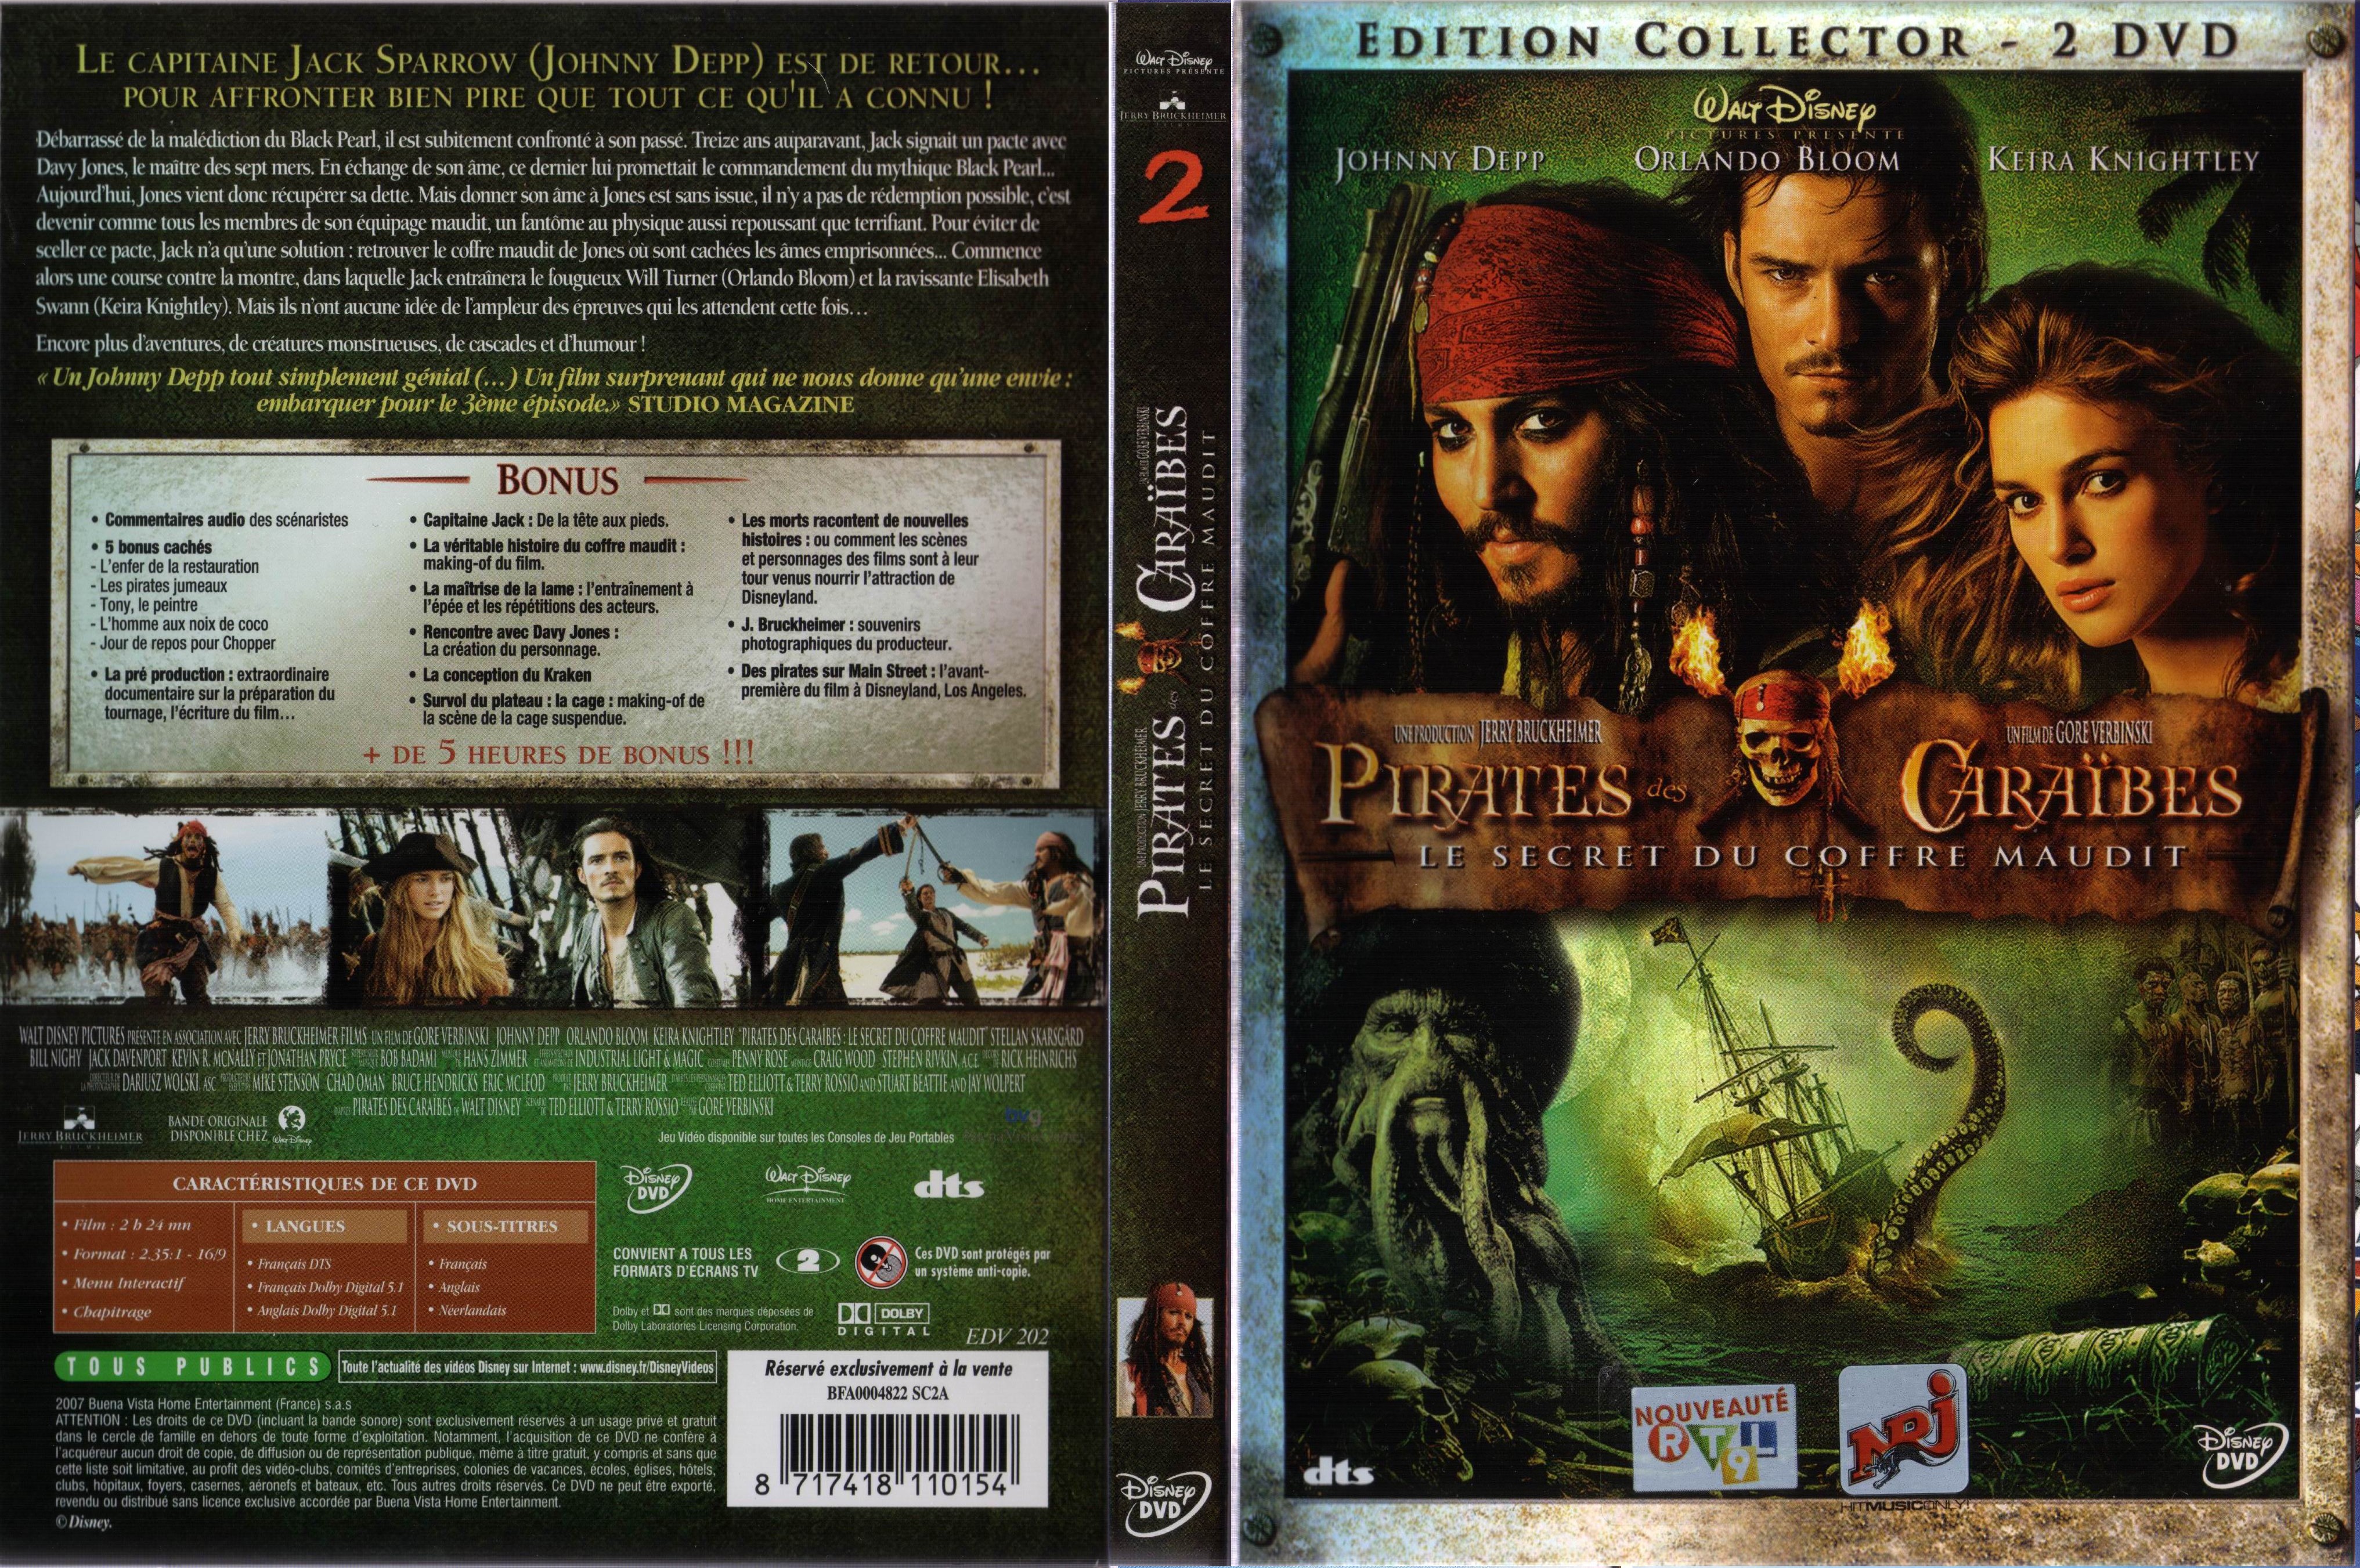 Jaquette DVD Pirates des caraibes 2 v3